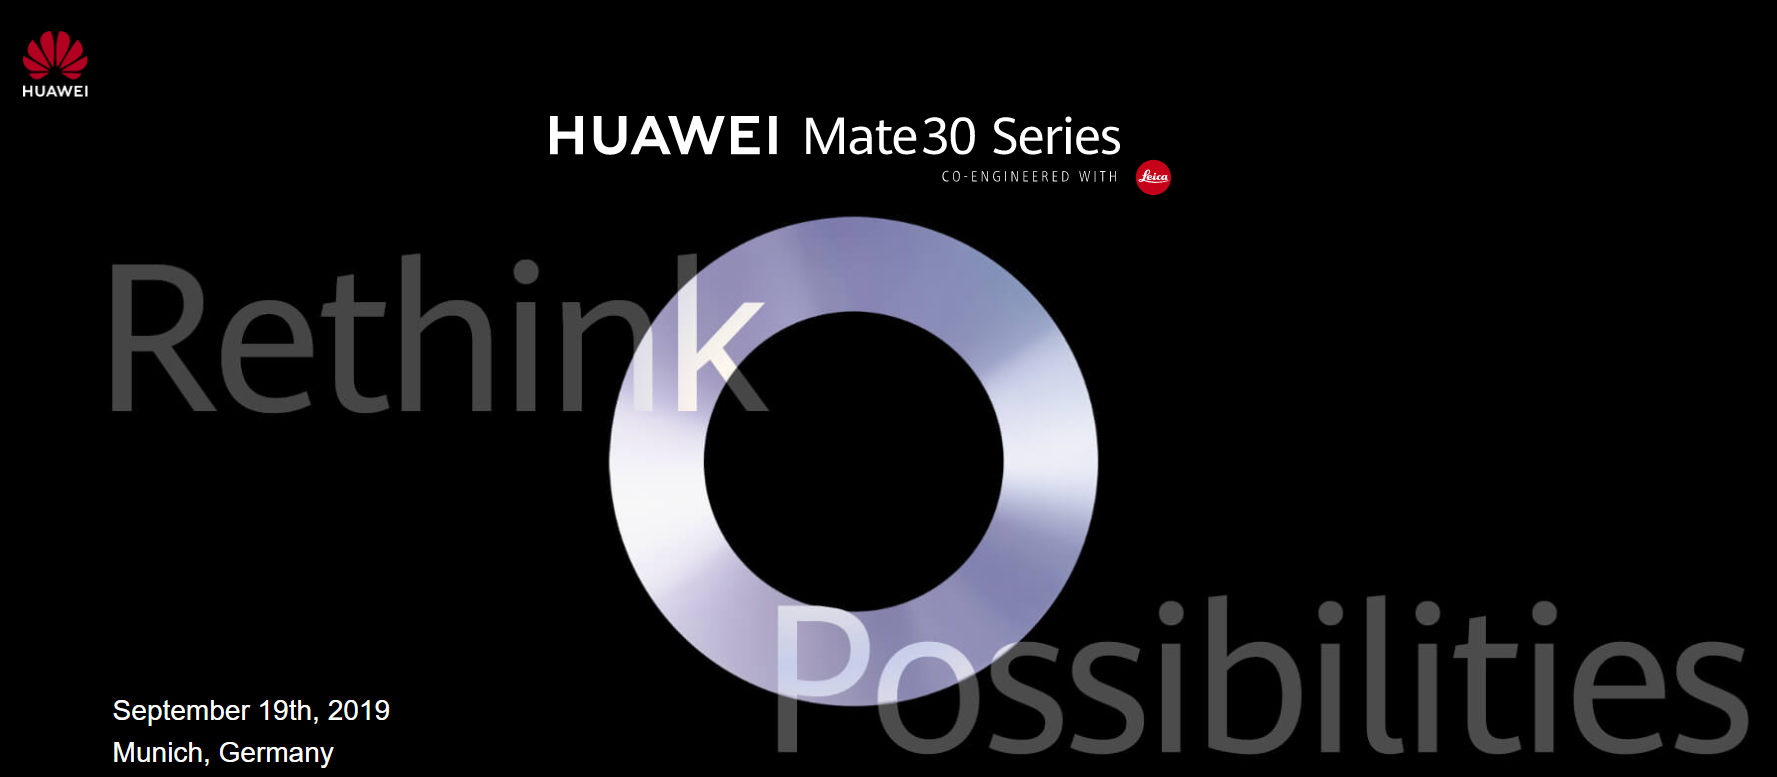 【快訊報報】華為 HUAWEI Mate30 系列新機 將在 9/19 德國慕尼黑發表 - 發表新手機 - 科技狗 3C DOG